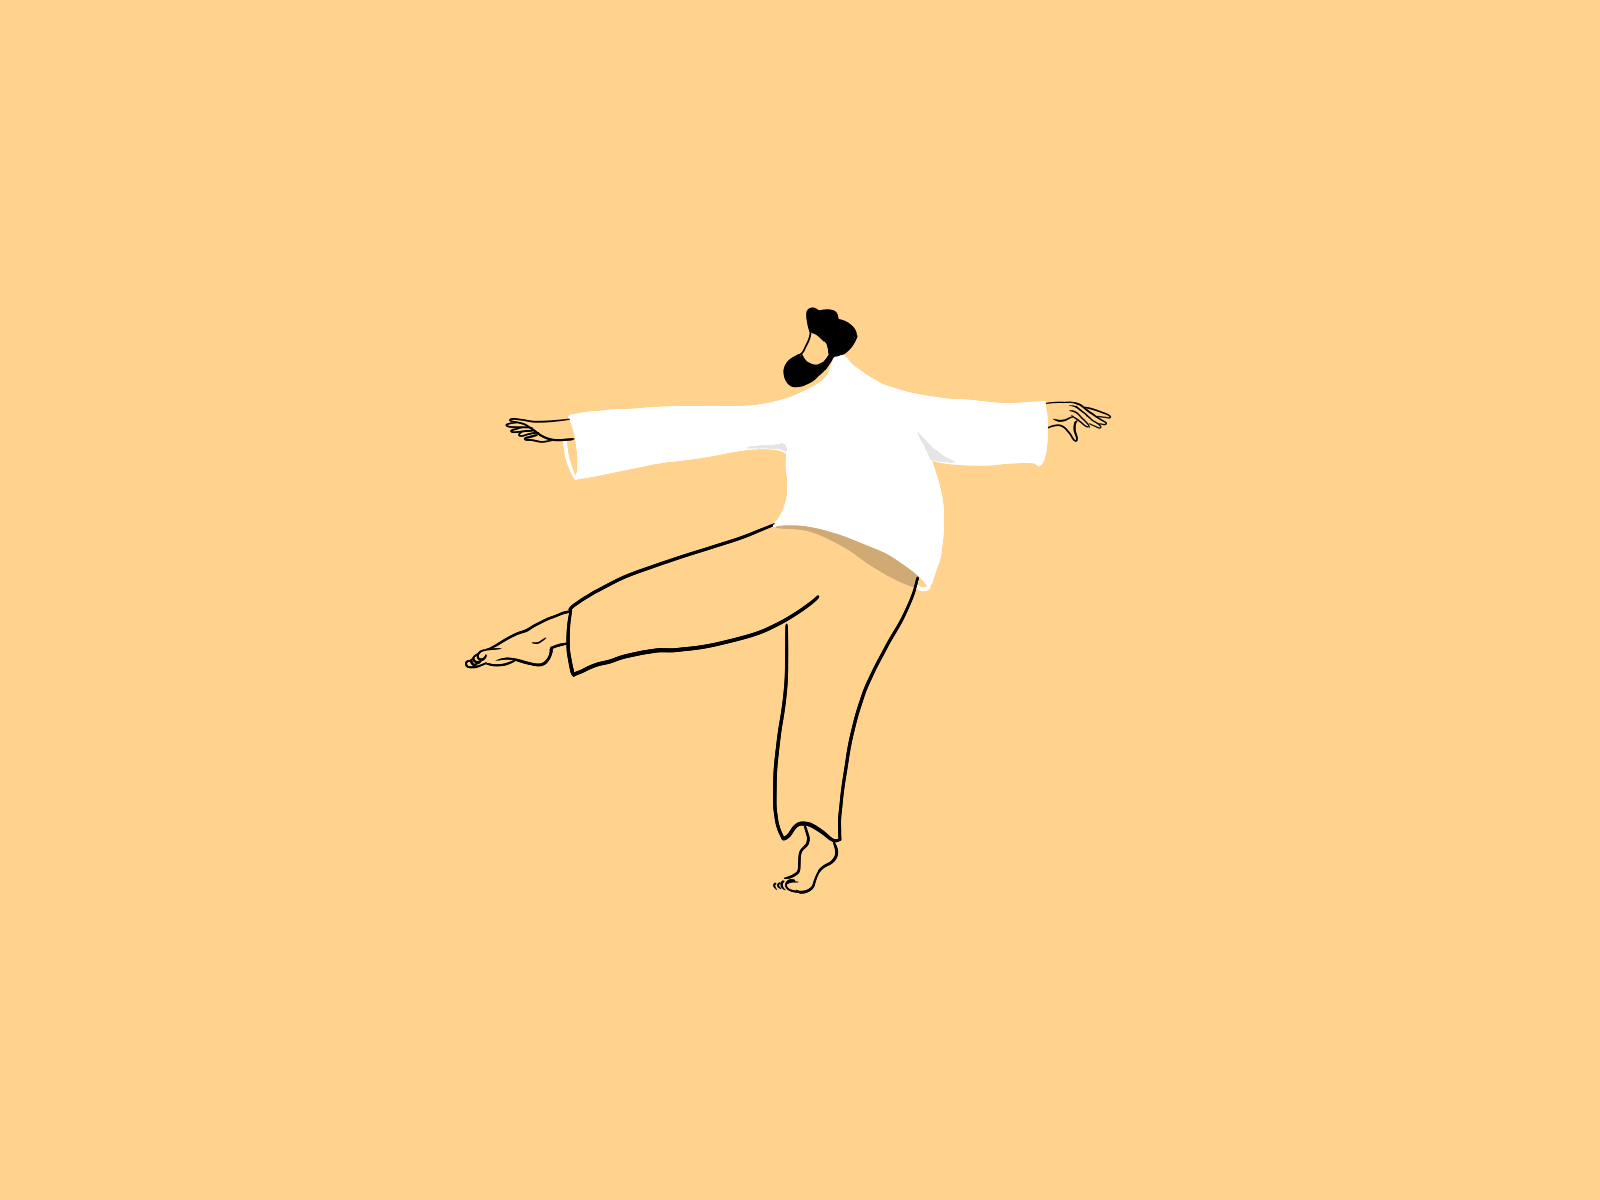 Il danse, animation de personnage image par image par Hervé Augoyat